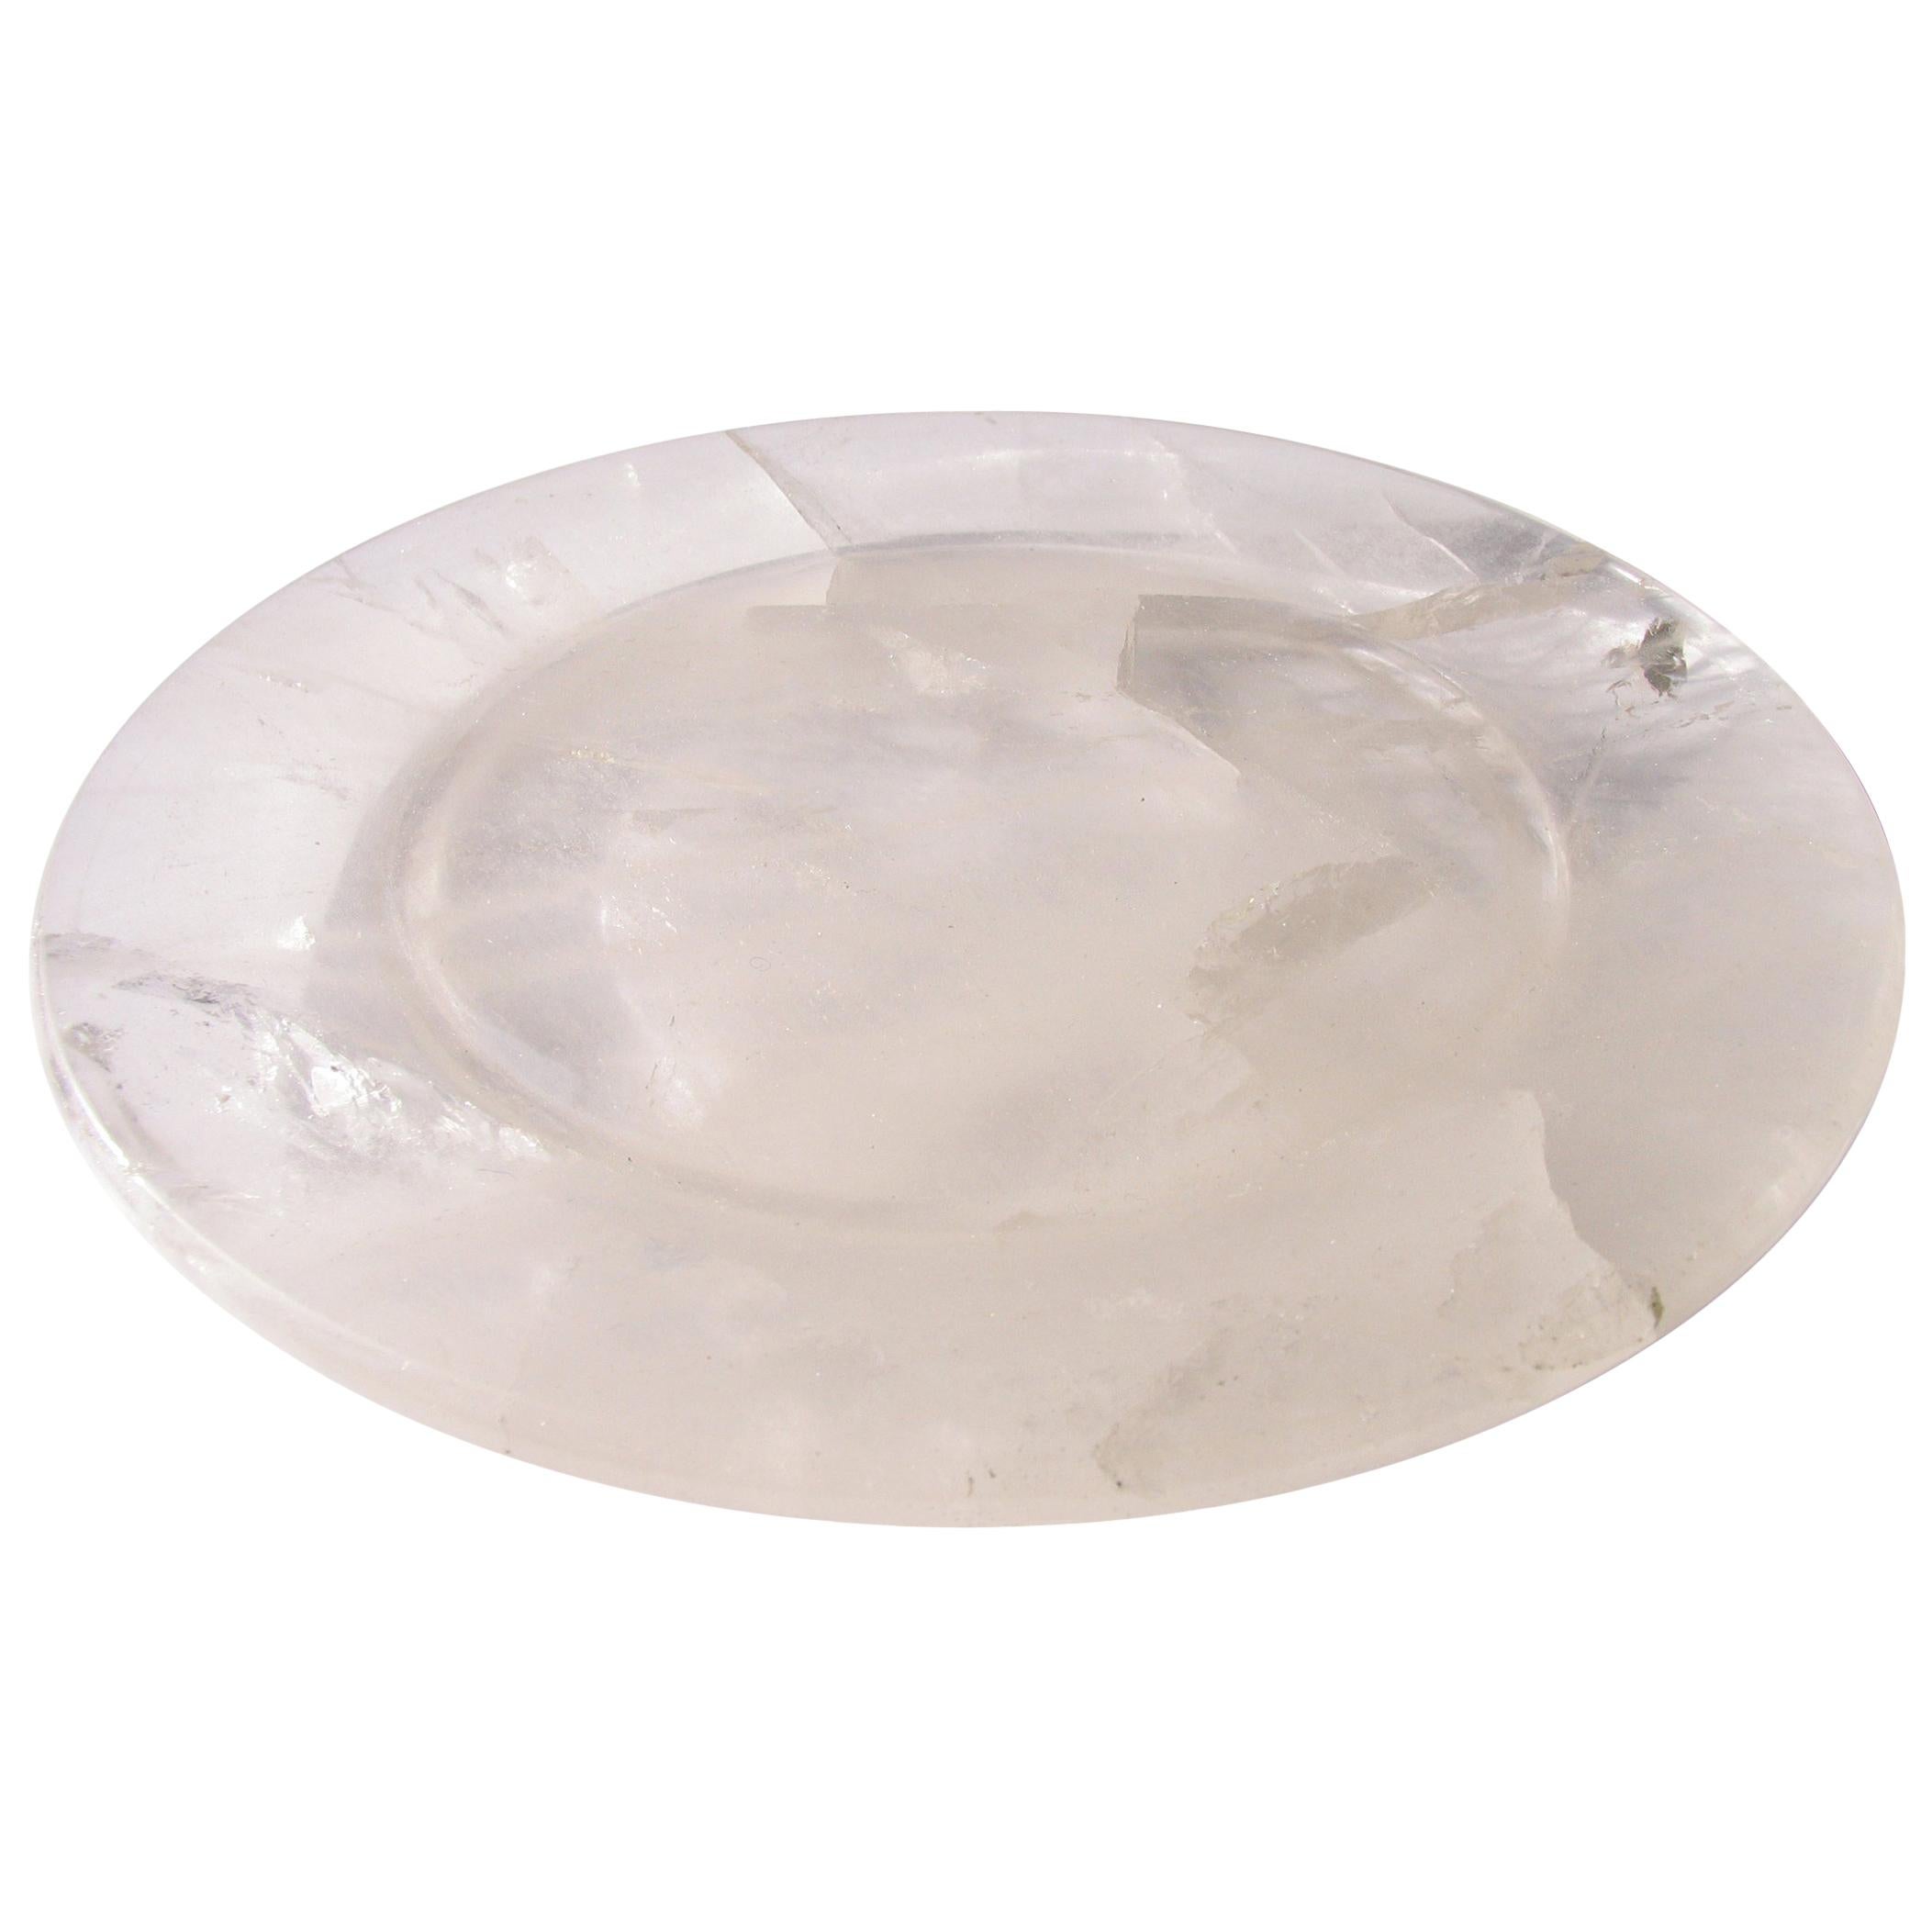 Solid Rock Quartz Crystal Circular Centerpiece Tray